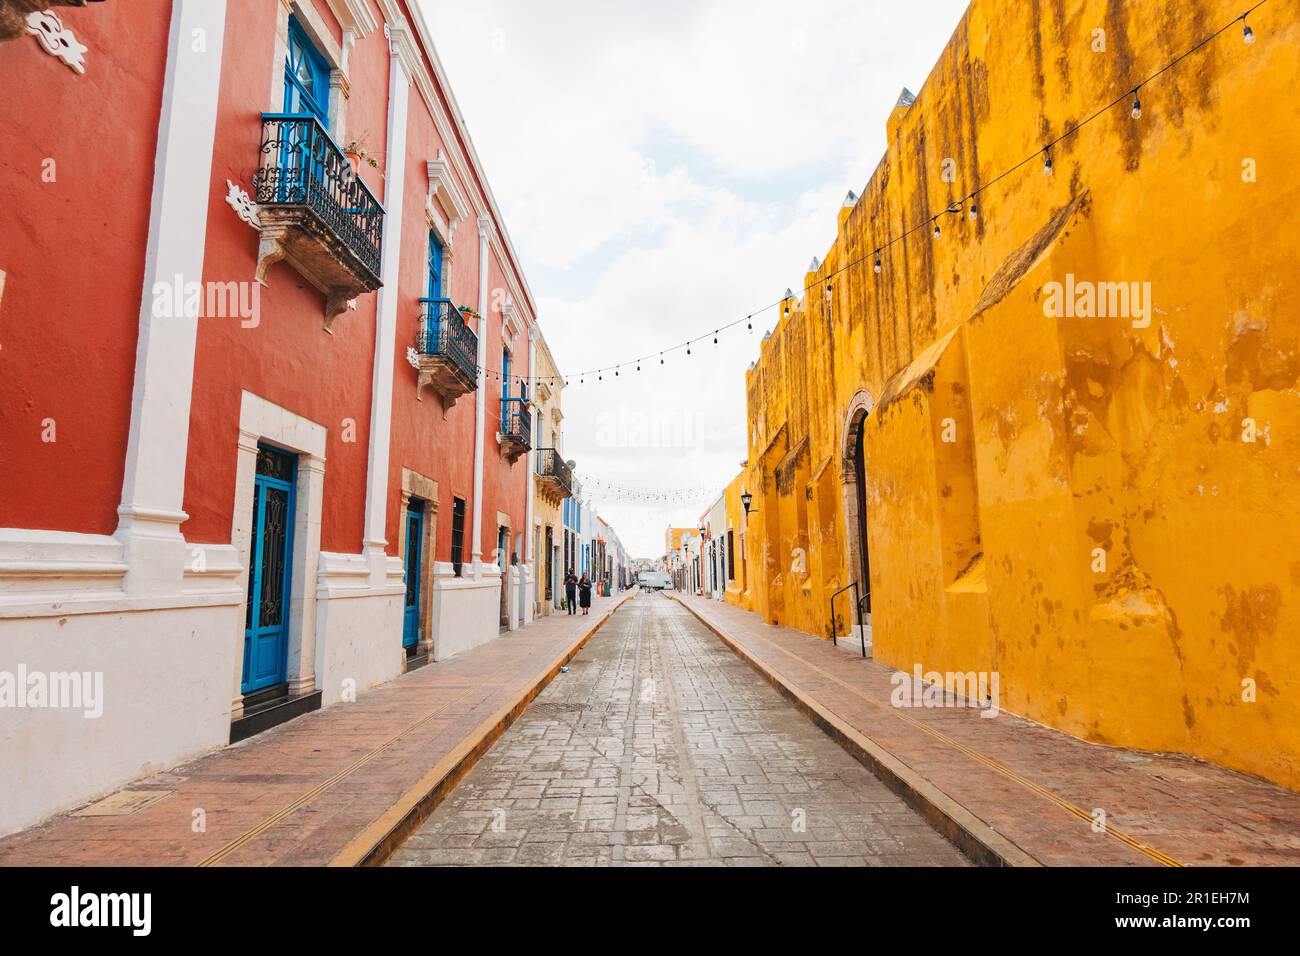 Edifici coloniali spagnoli dipinti in vari colori vivaci nel centro storico della città di Campeche, Messico Foto Stock